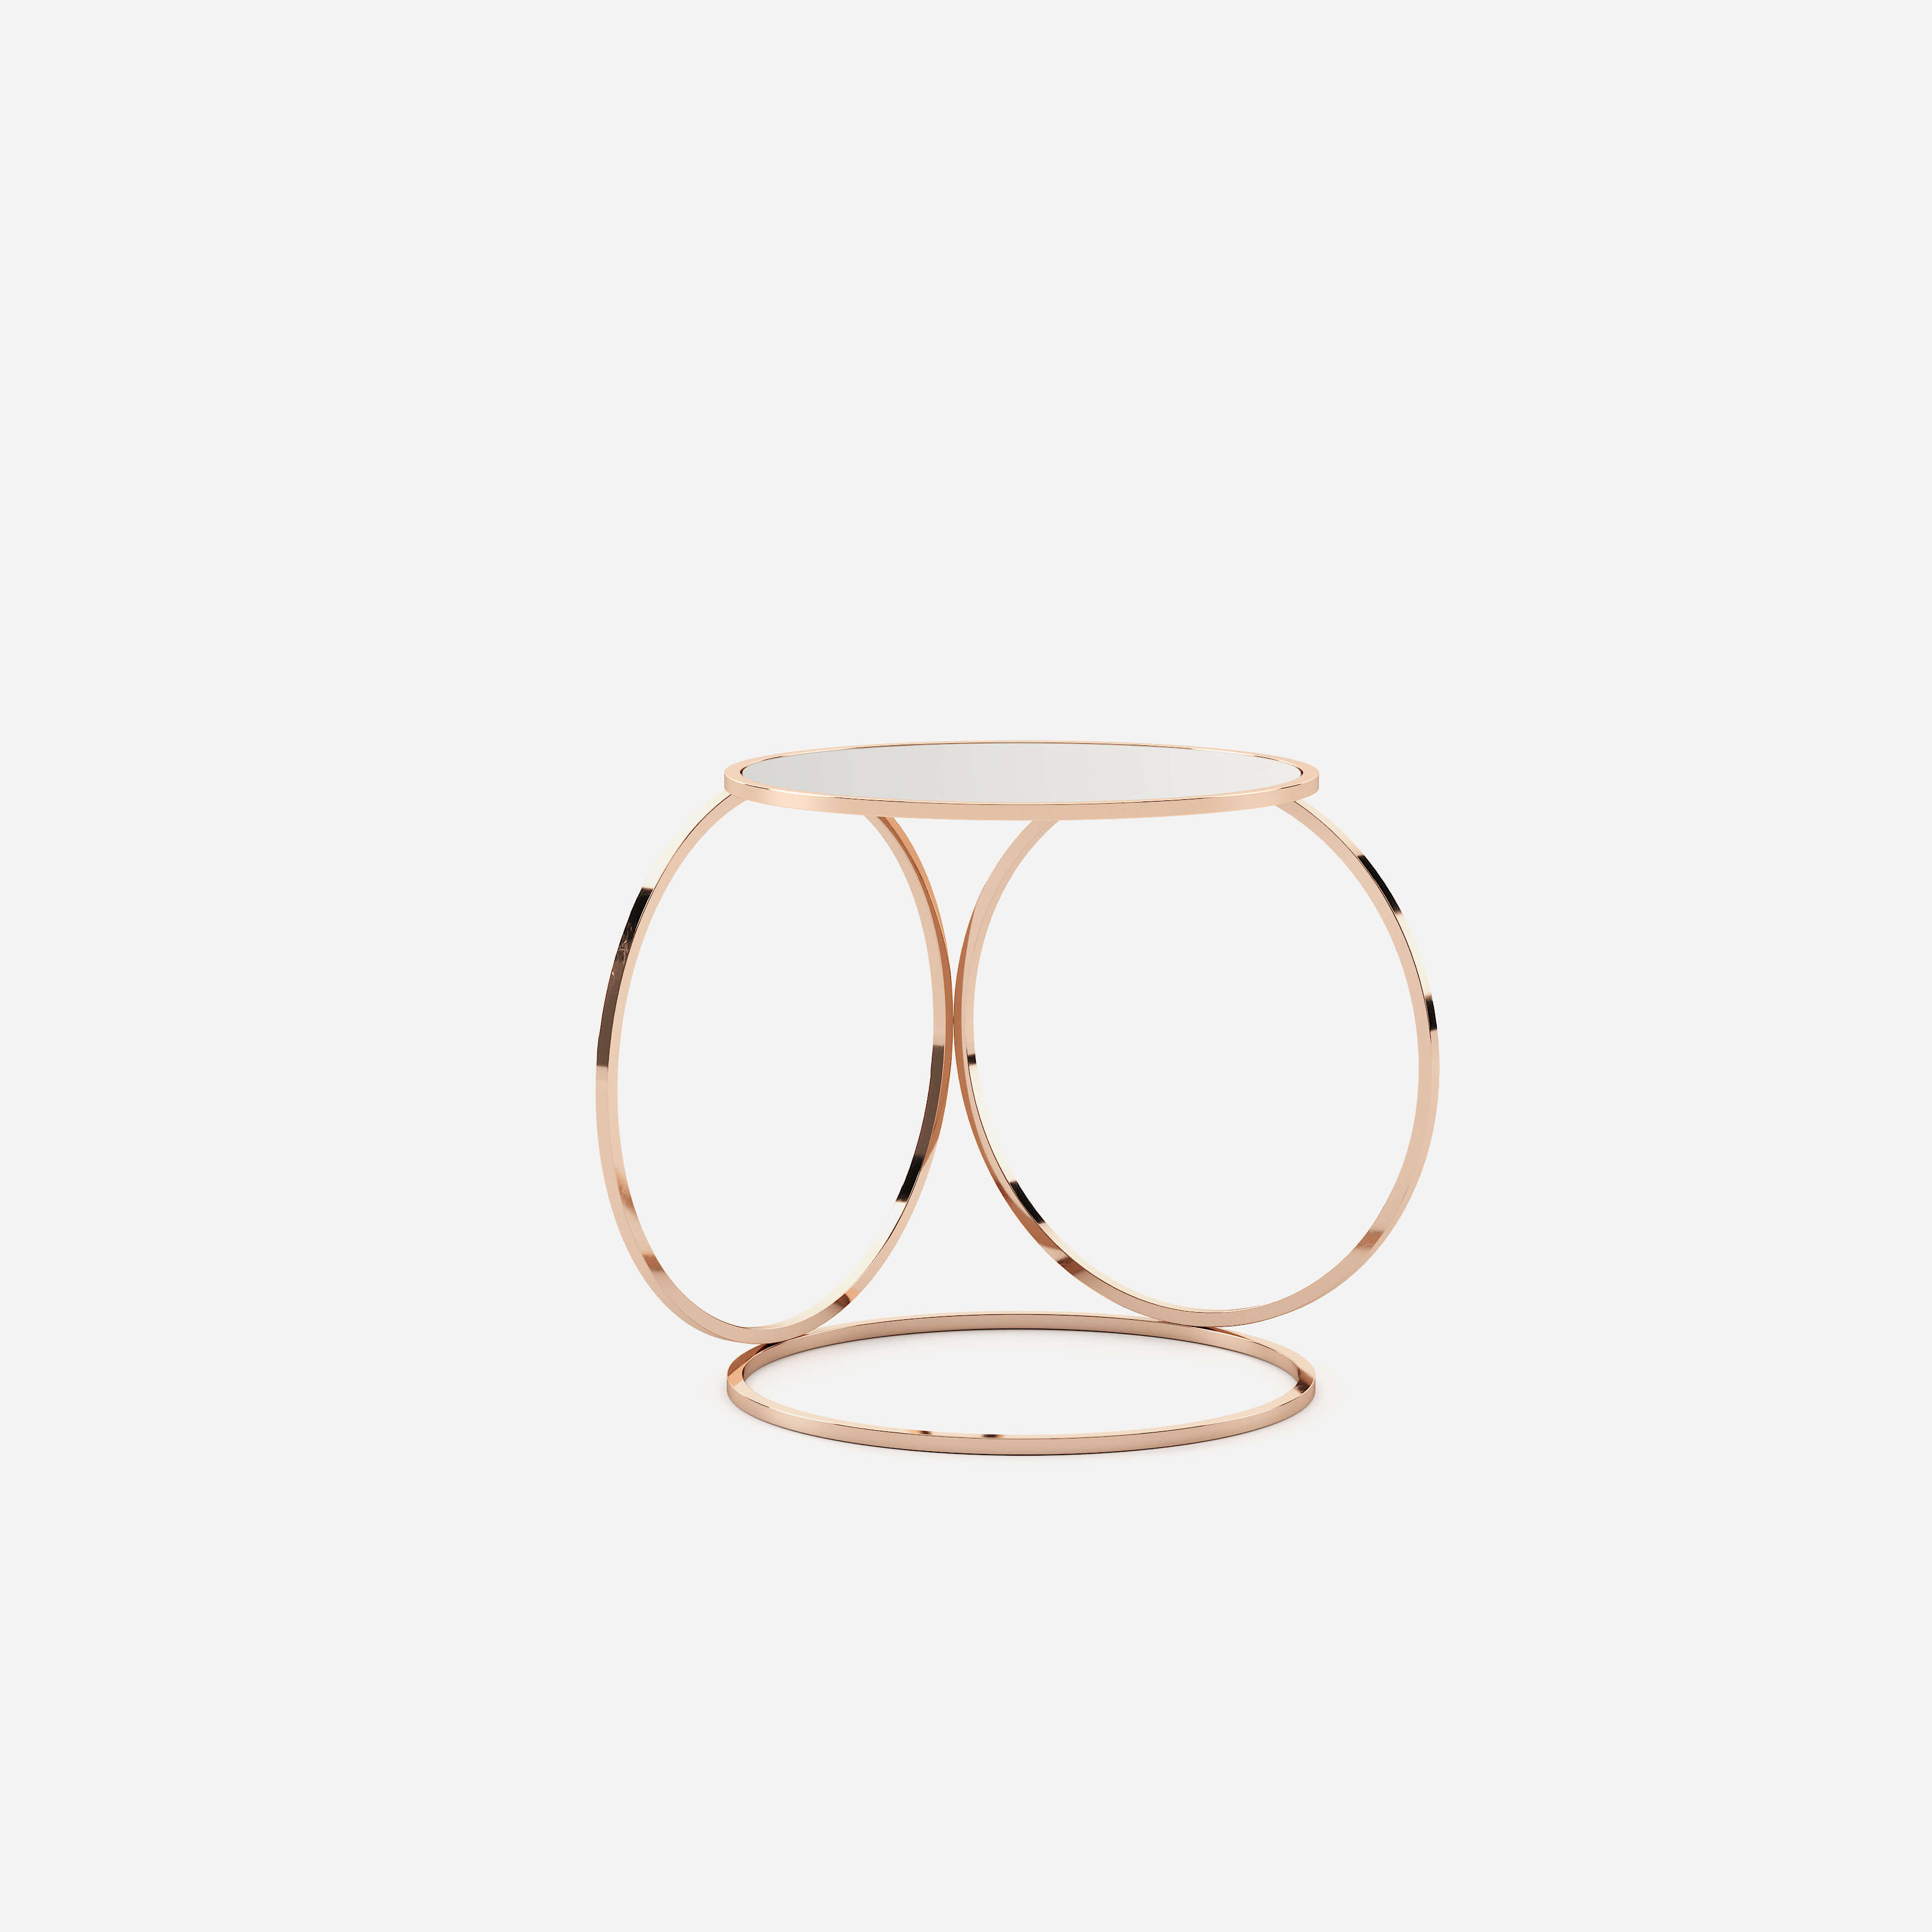 sharon-side-table-copper-glass-accessory-interior-design-home-decor-domkapa-1